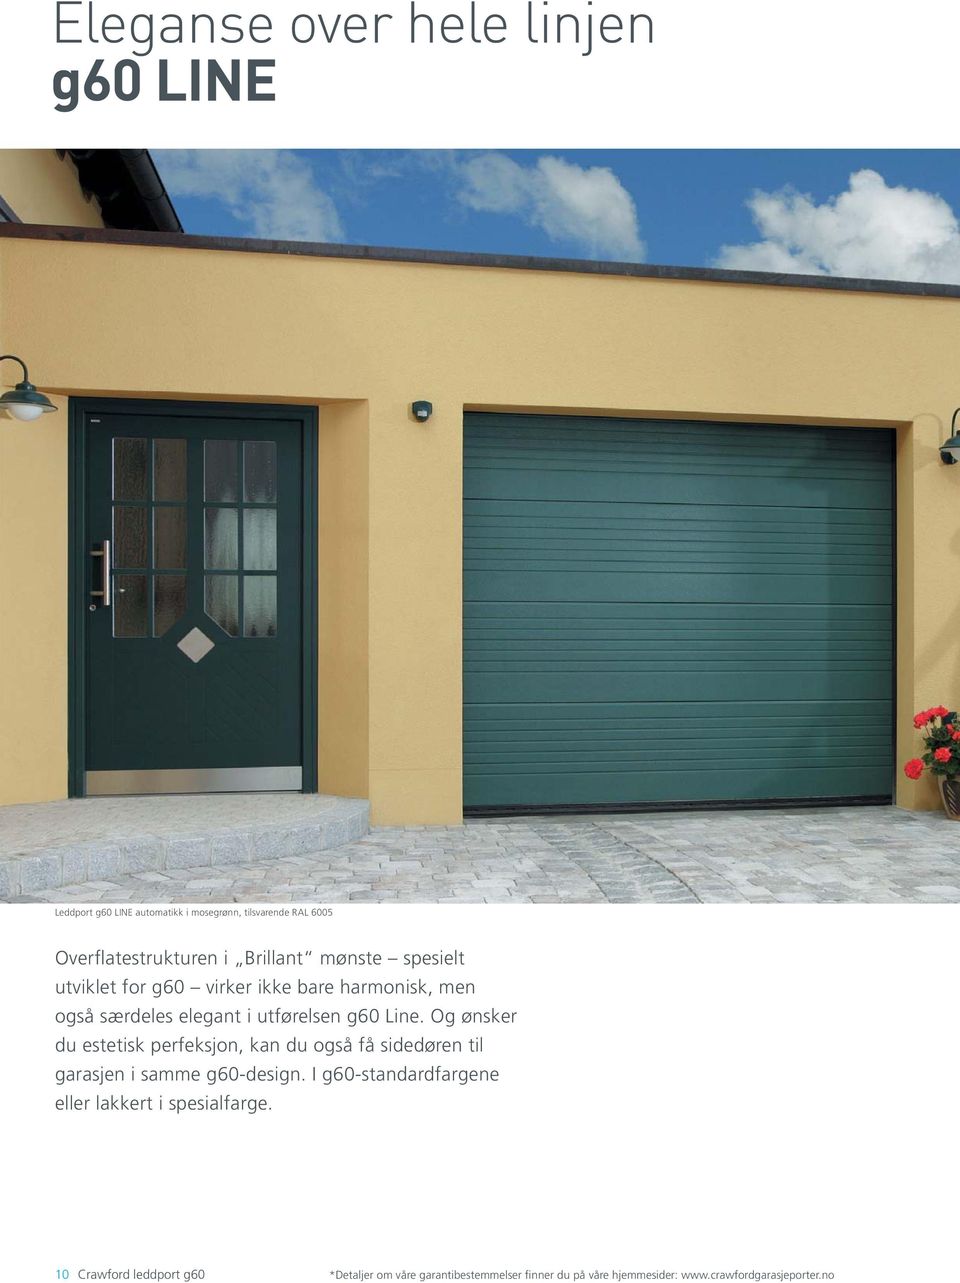 Og ønsker du estetisk perfeksjon, kan du også få sidedøren til garasjen i samme g60-design.